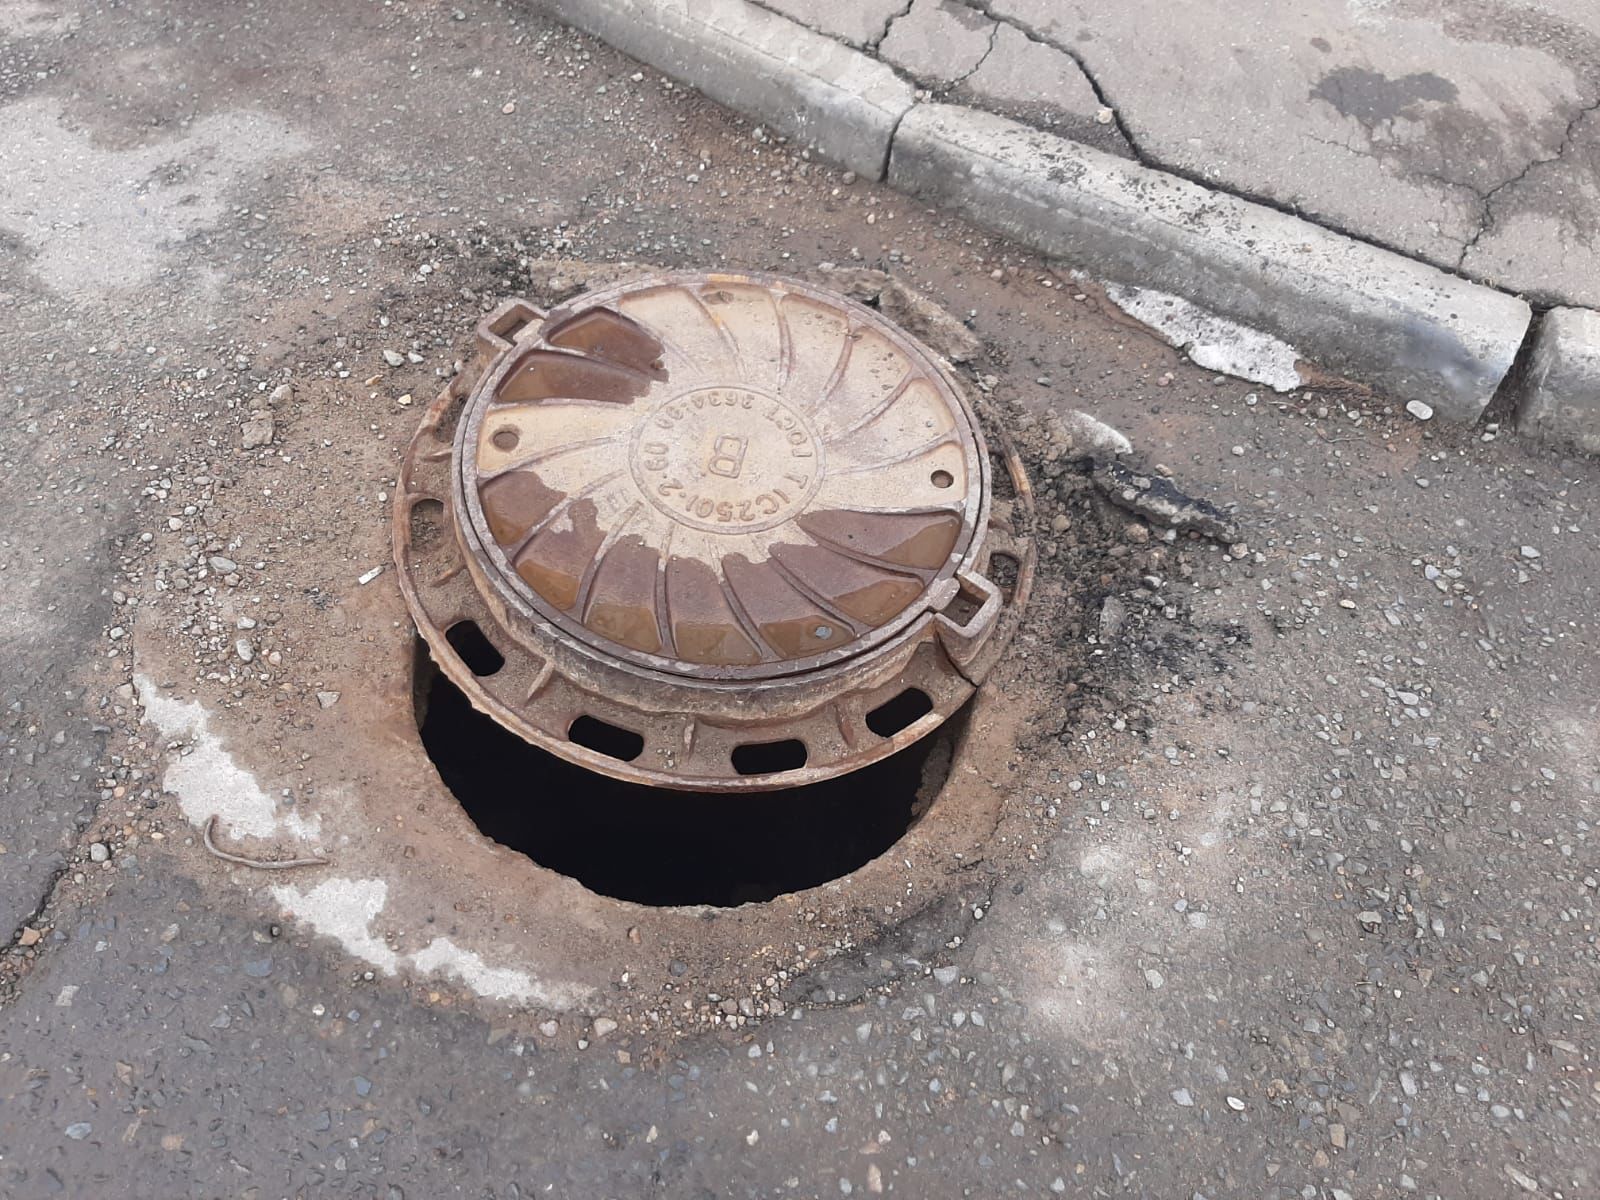 Жительница Чистополя просит закрыть канализационный люк во дворе многоквартирного дома